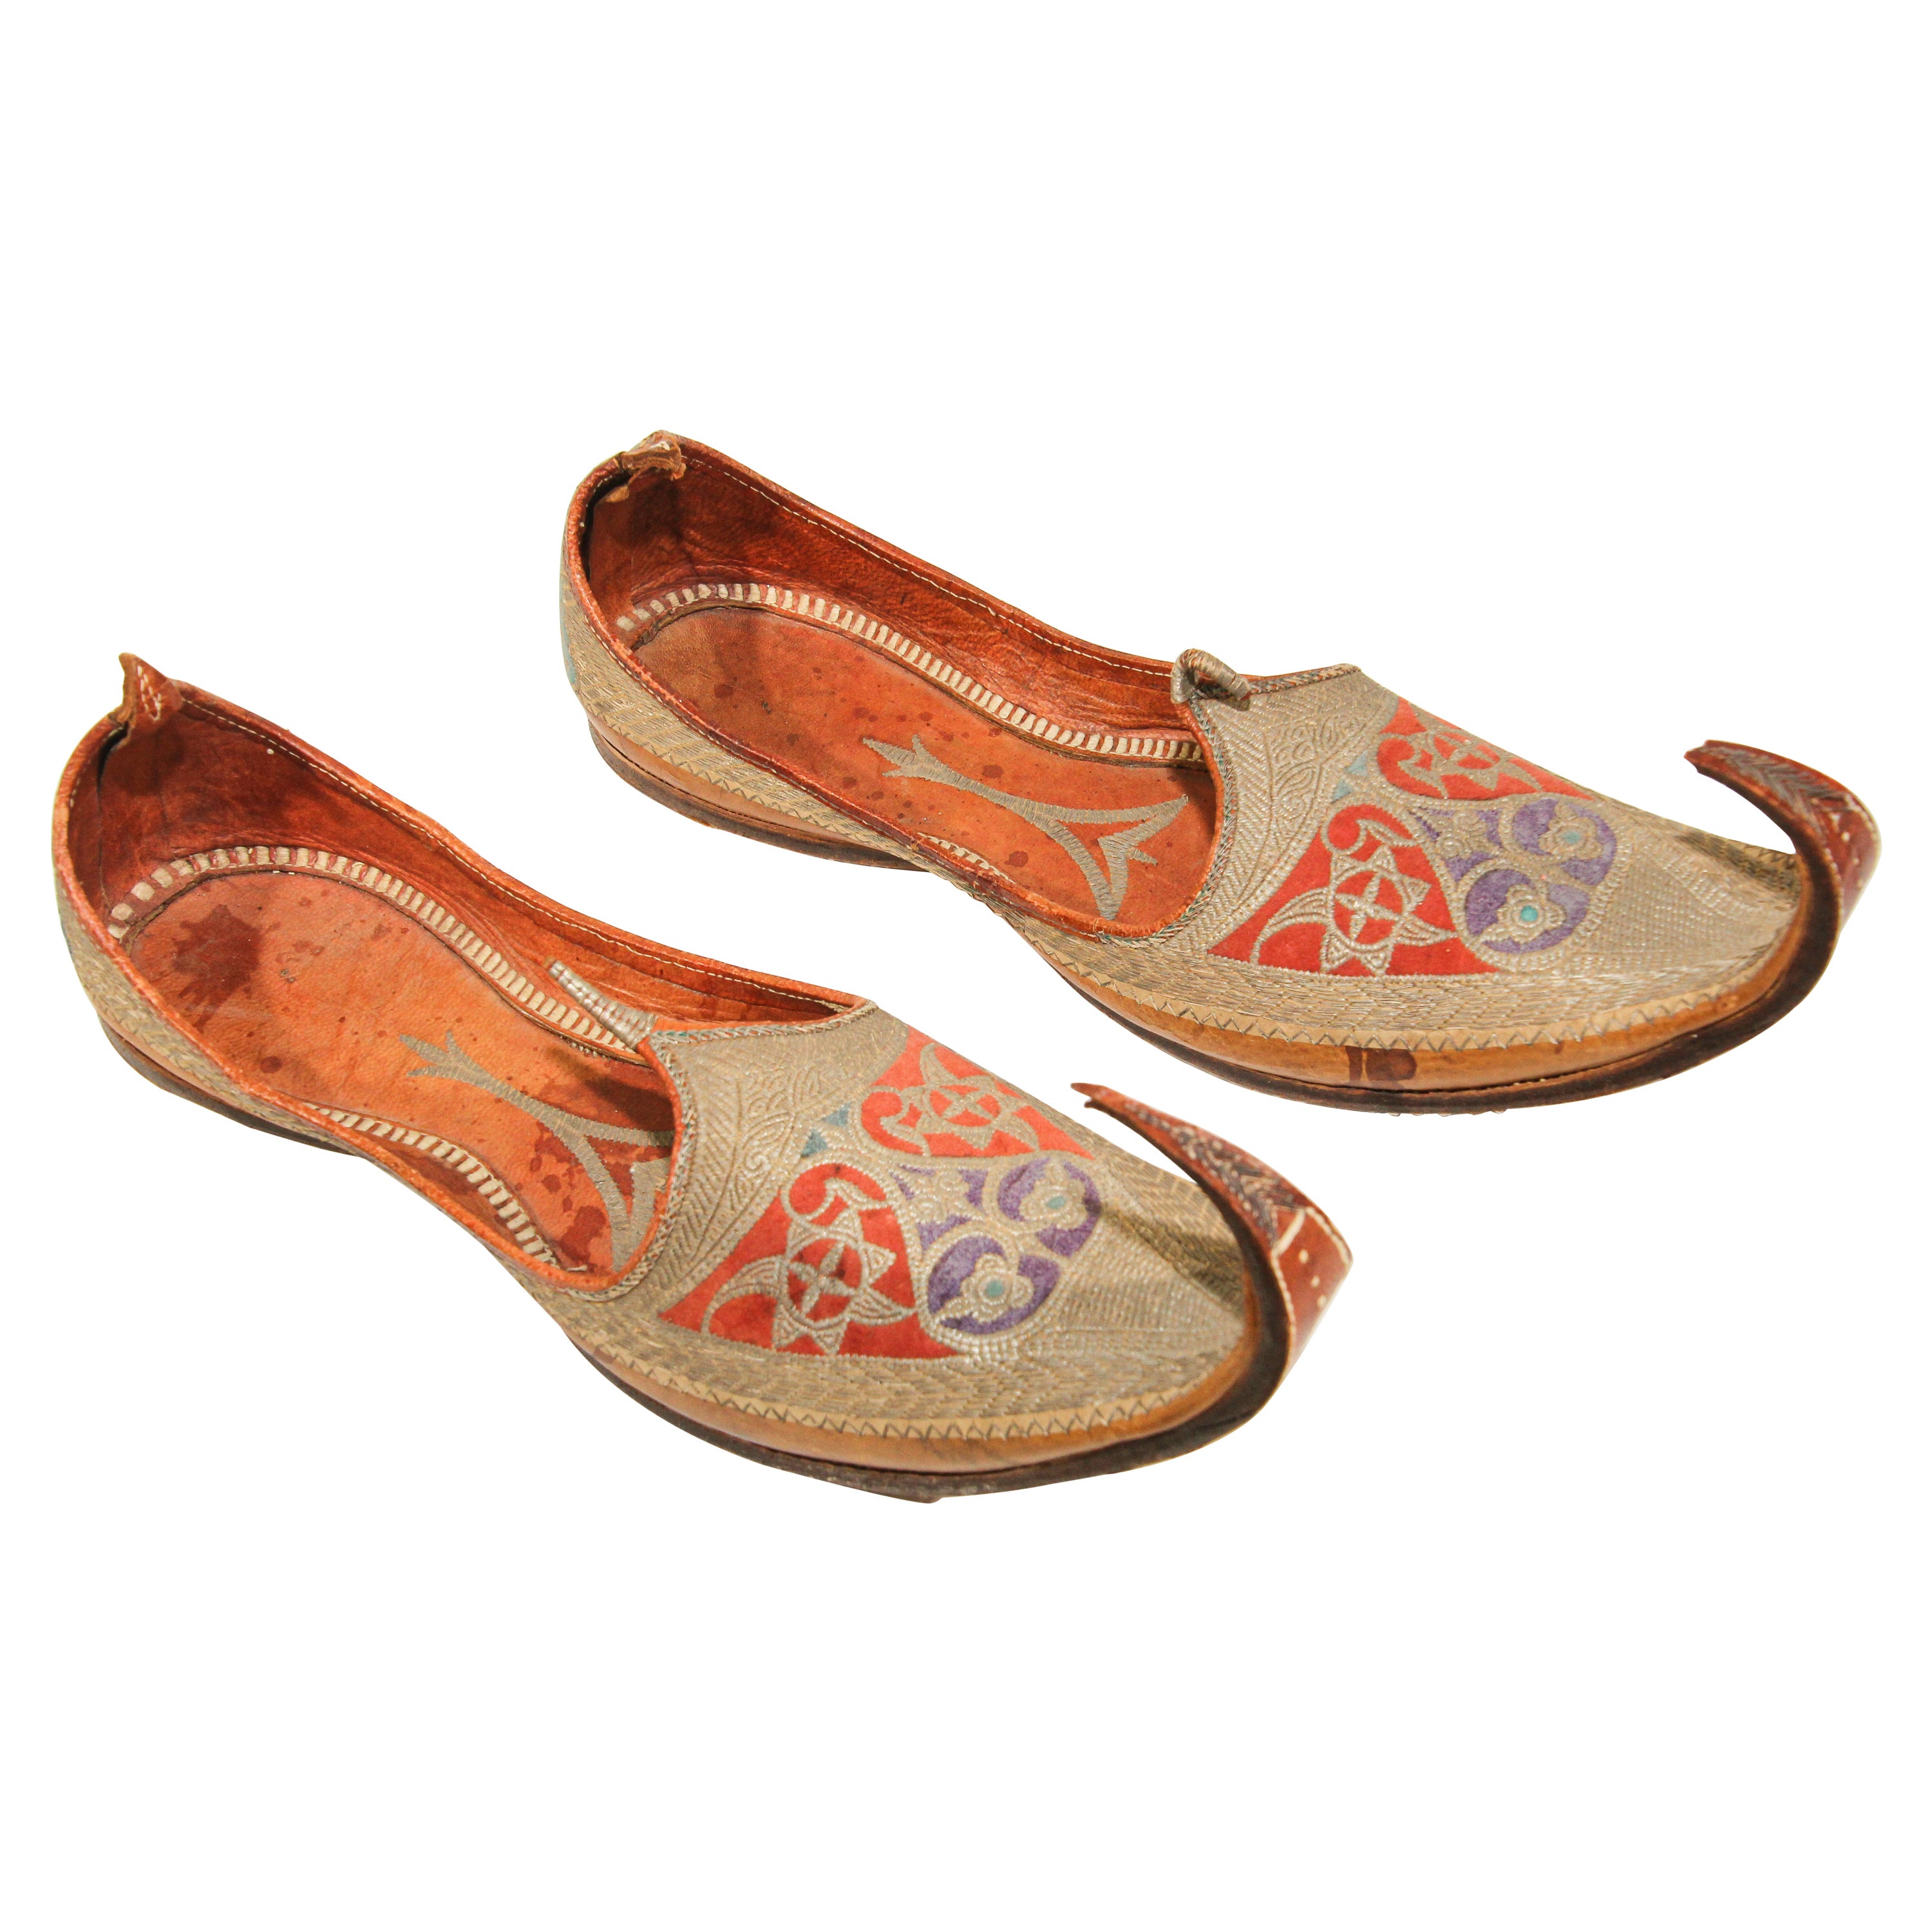 Chaussures mogholes anciennes en cuir avec broderie dorée